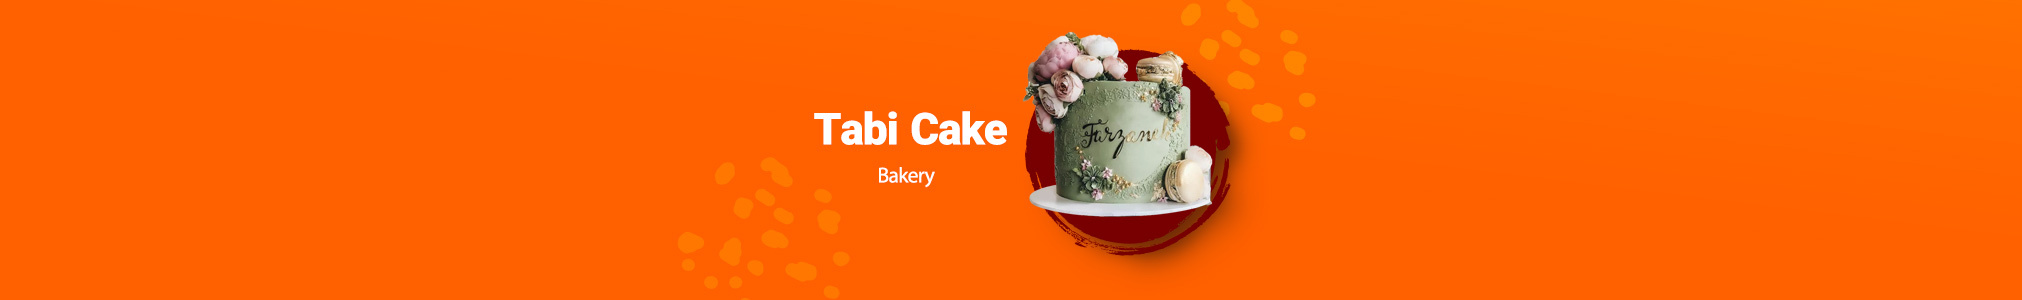 Tabi Cake